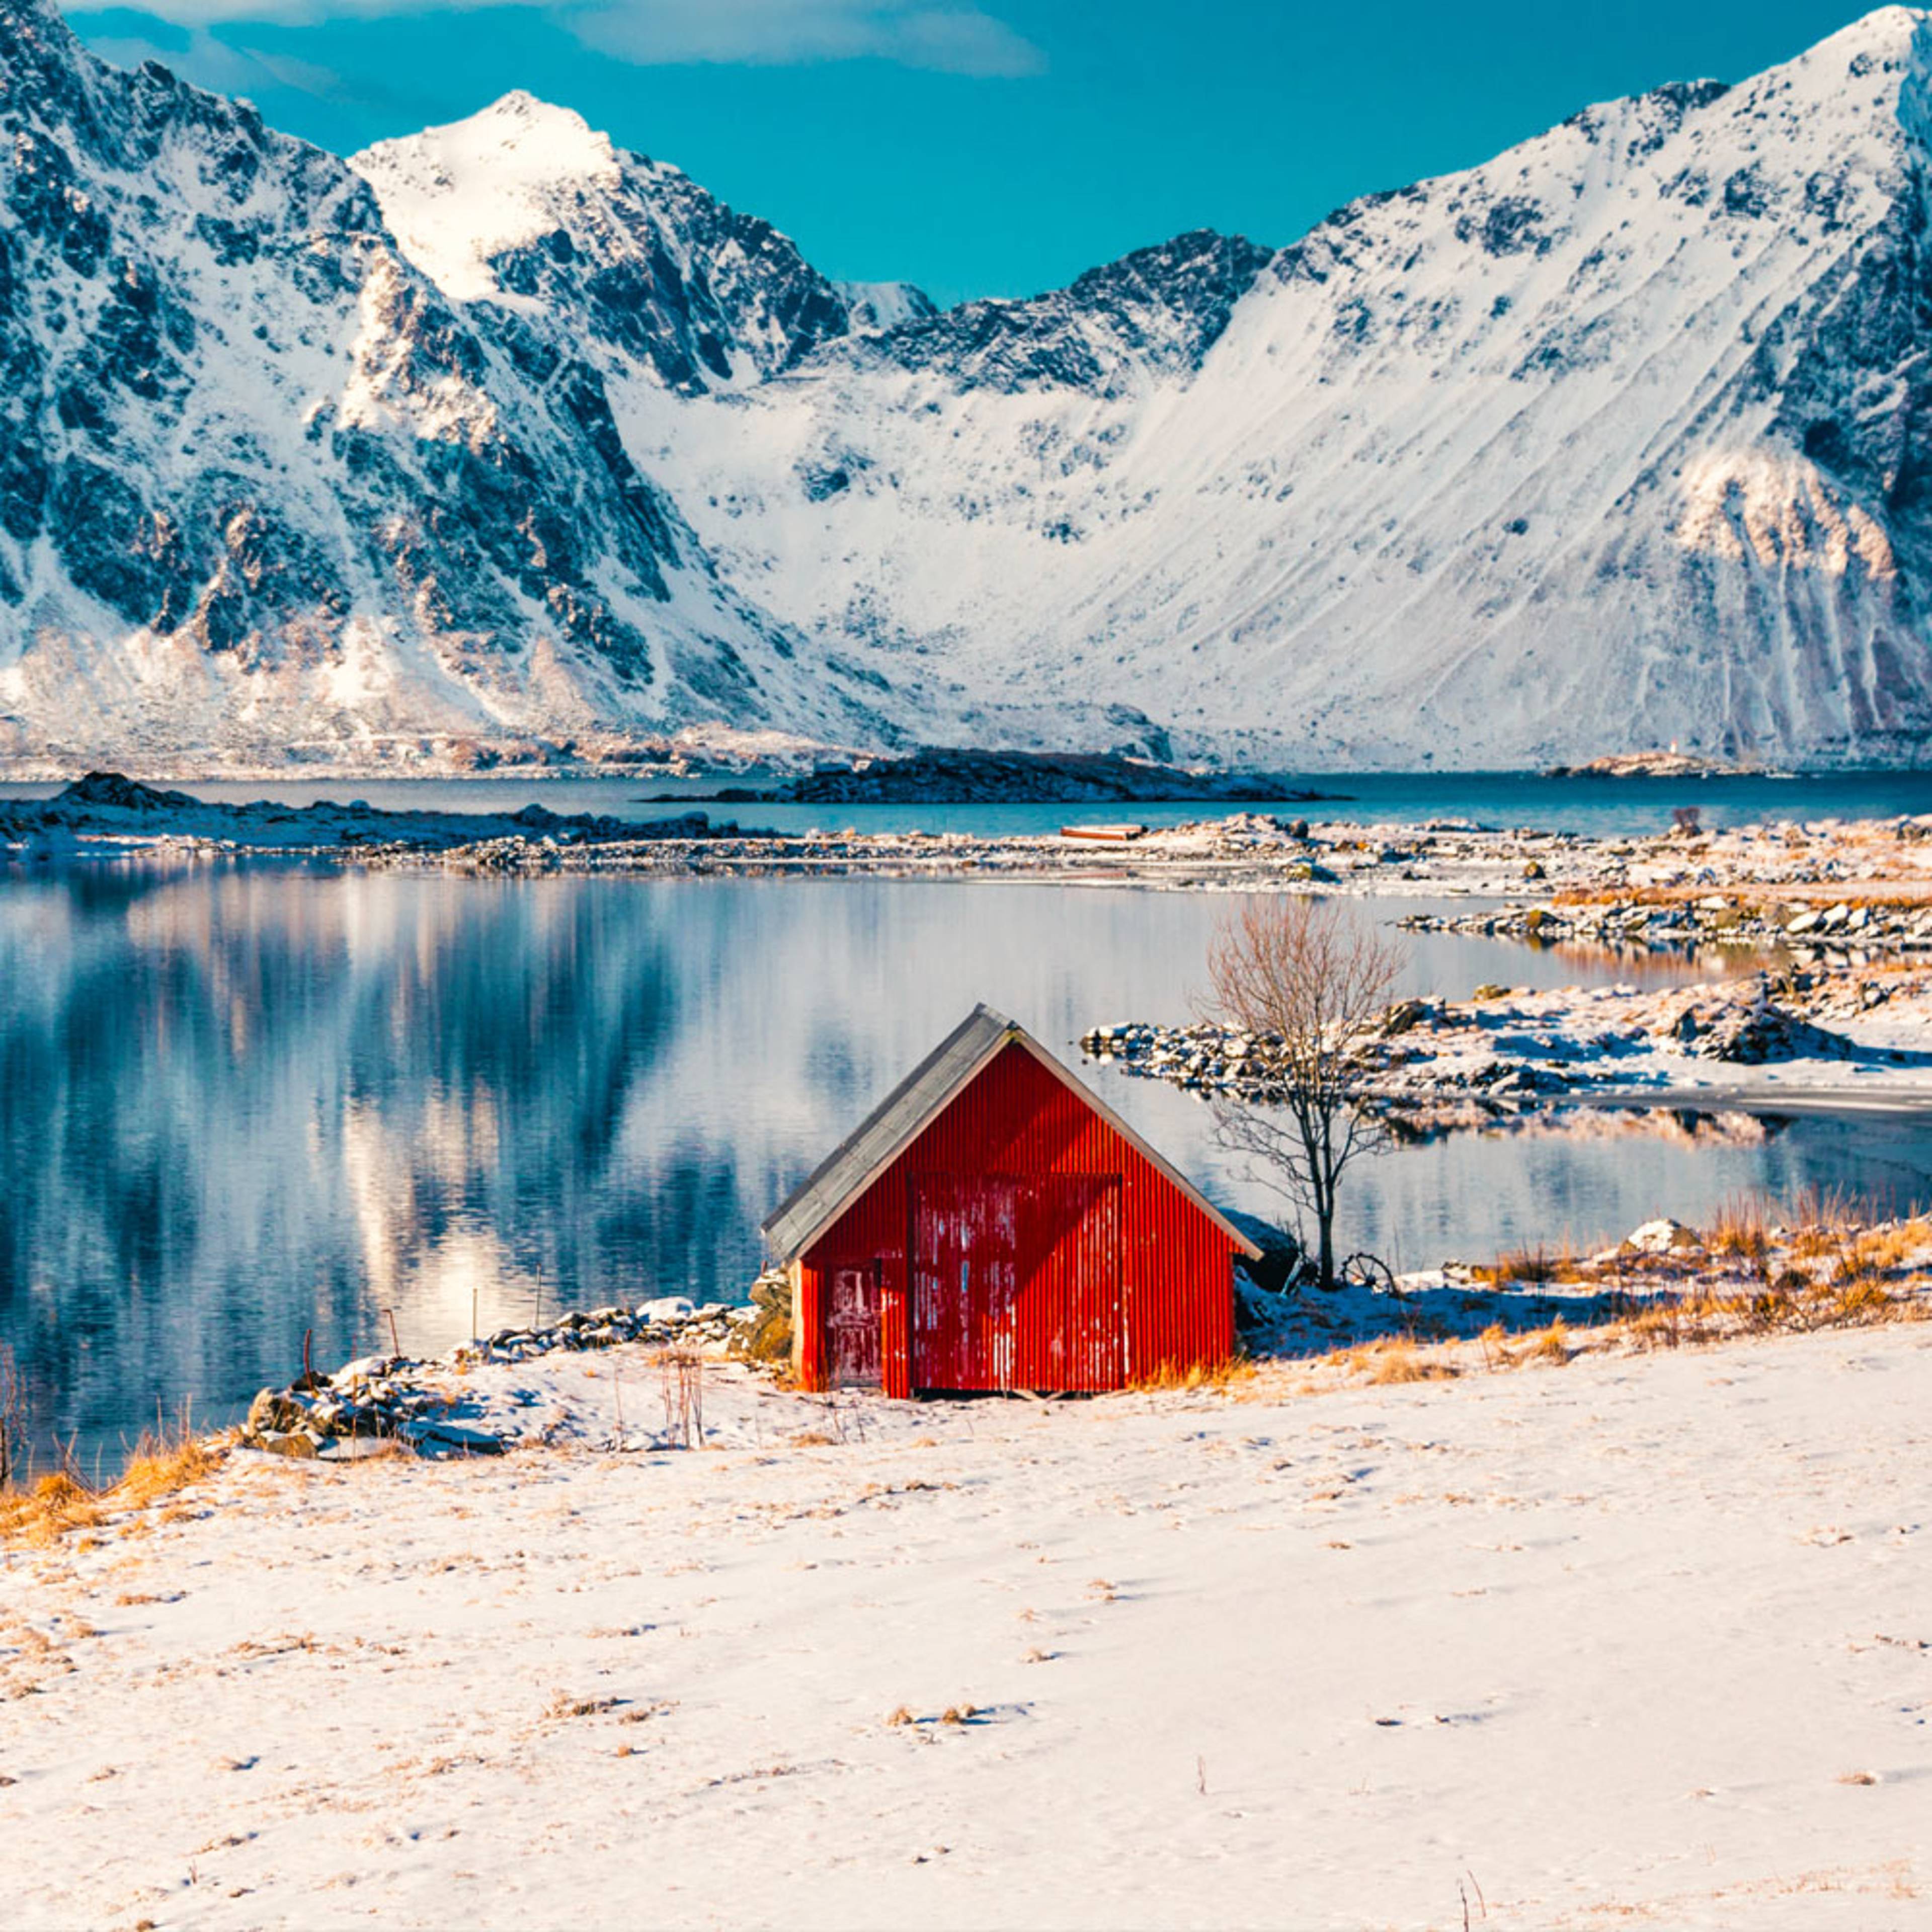 Meine Norwegen Inselreise jetzt individuell gestalten